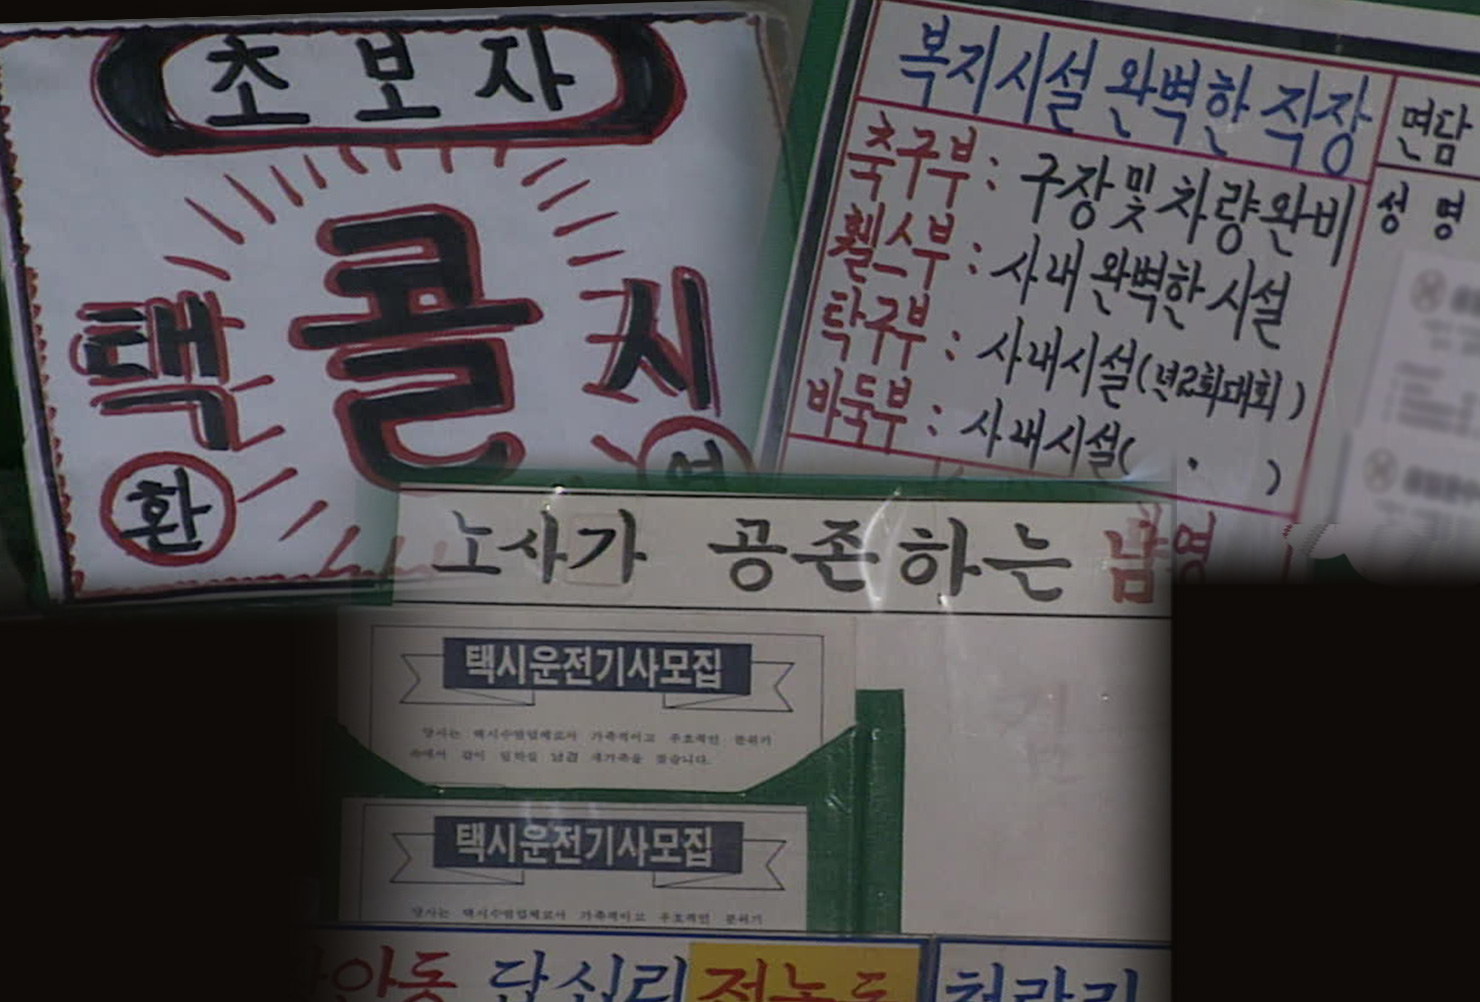 택시회사들의 기사 모집 문구(1992.04.24, KBS 9시 뉴스 중)